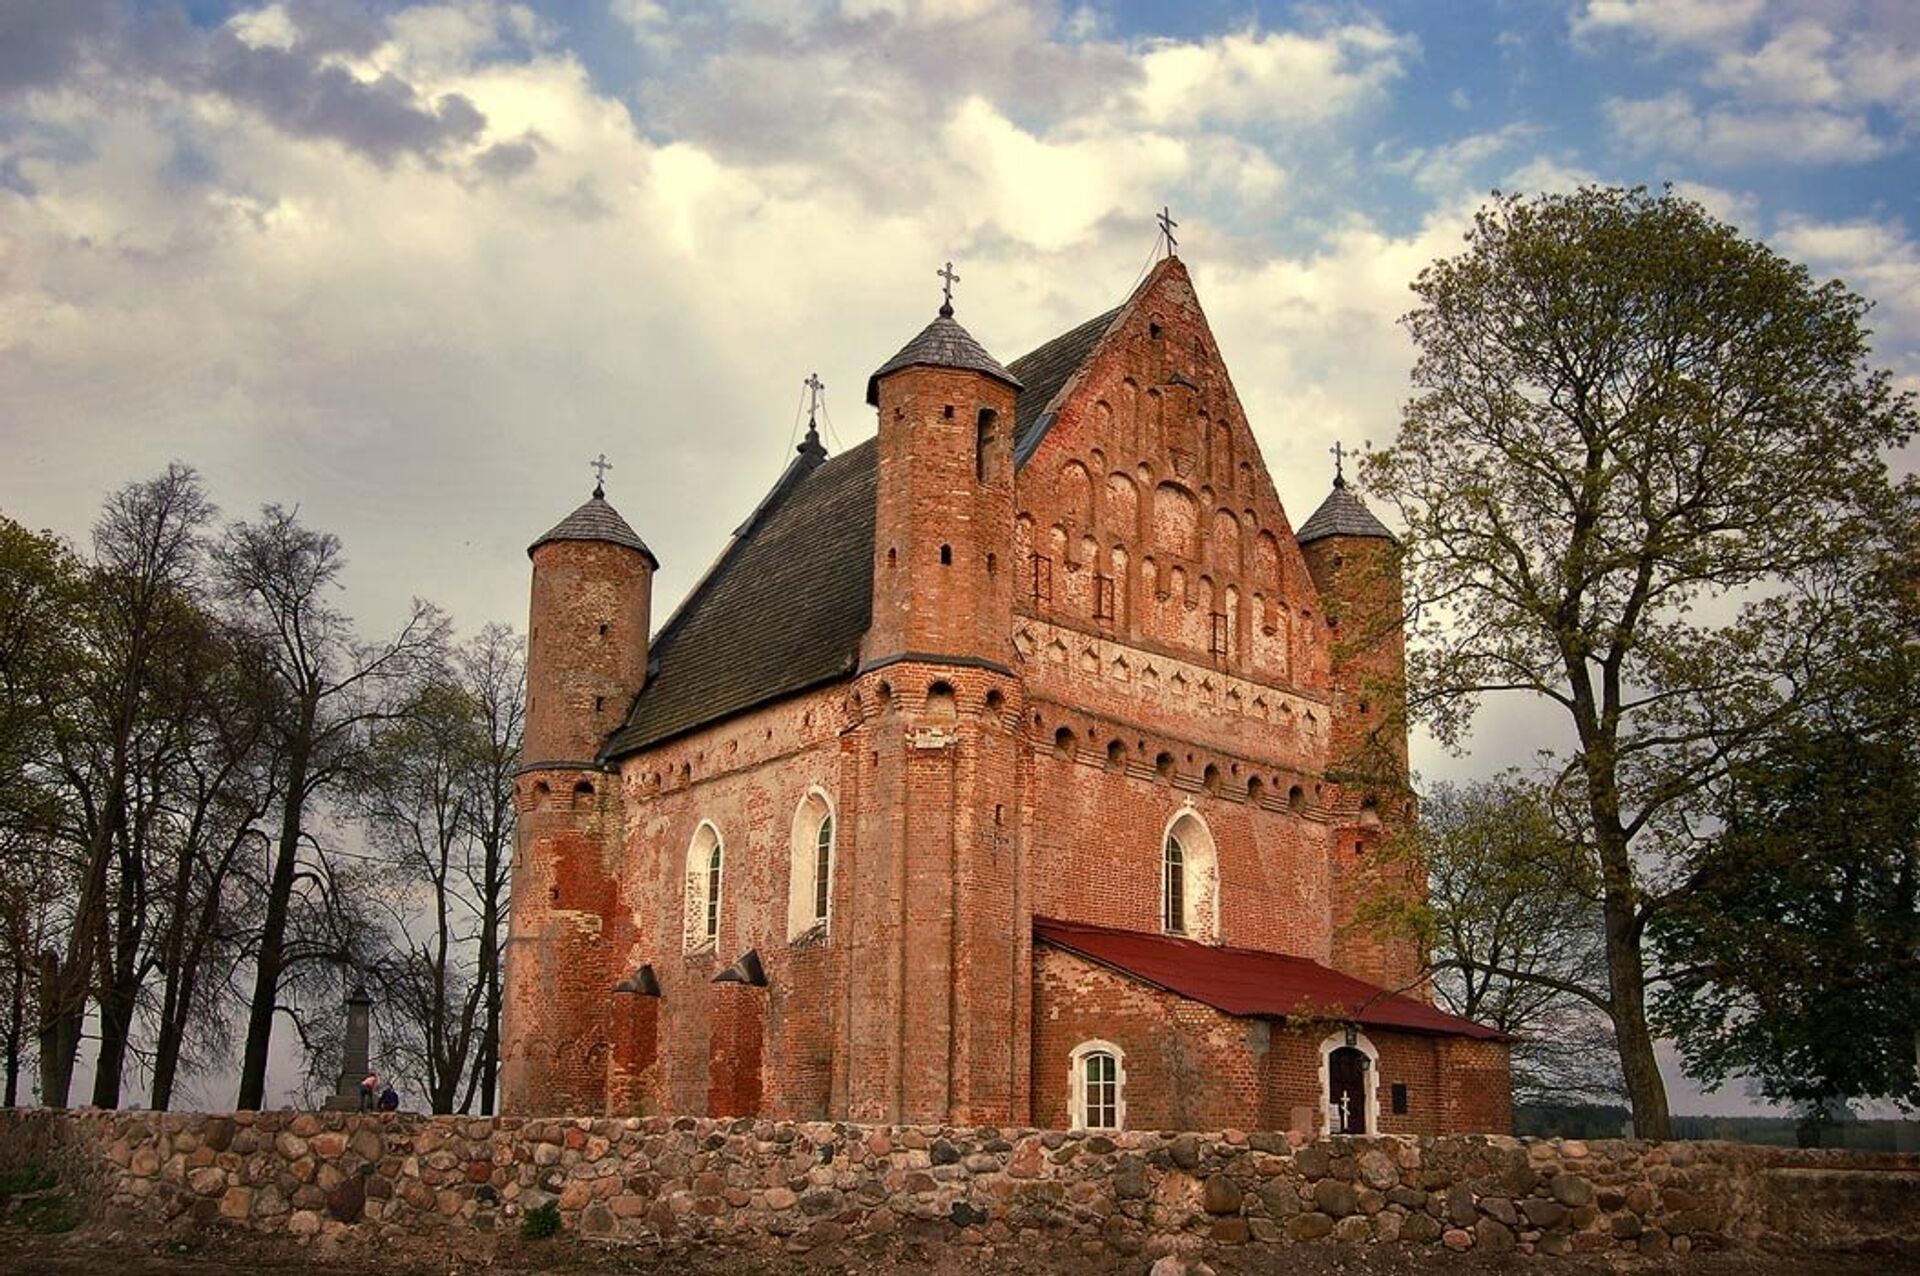 Церковь Святого Архангела Михаила была построена в начале XVI века в городке Сынковичи, что в Гродненской области - РИА Новости, 1920, 15.05.2021